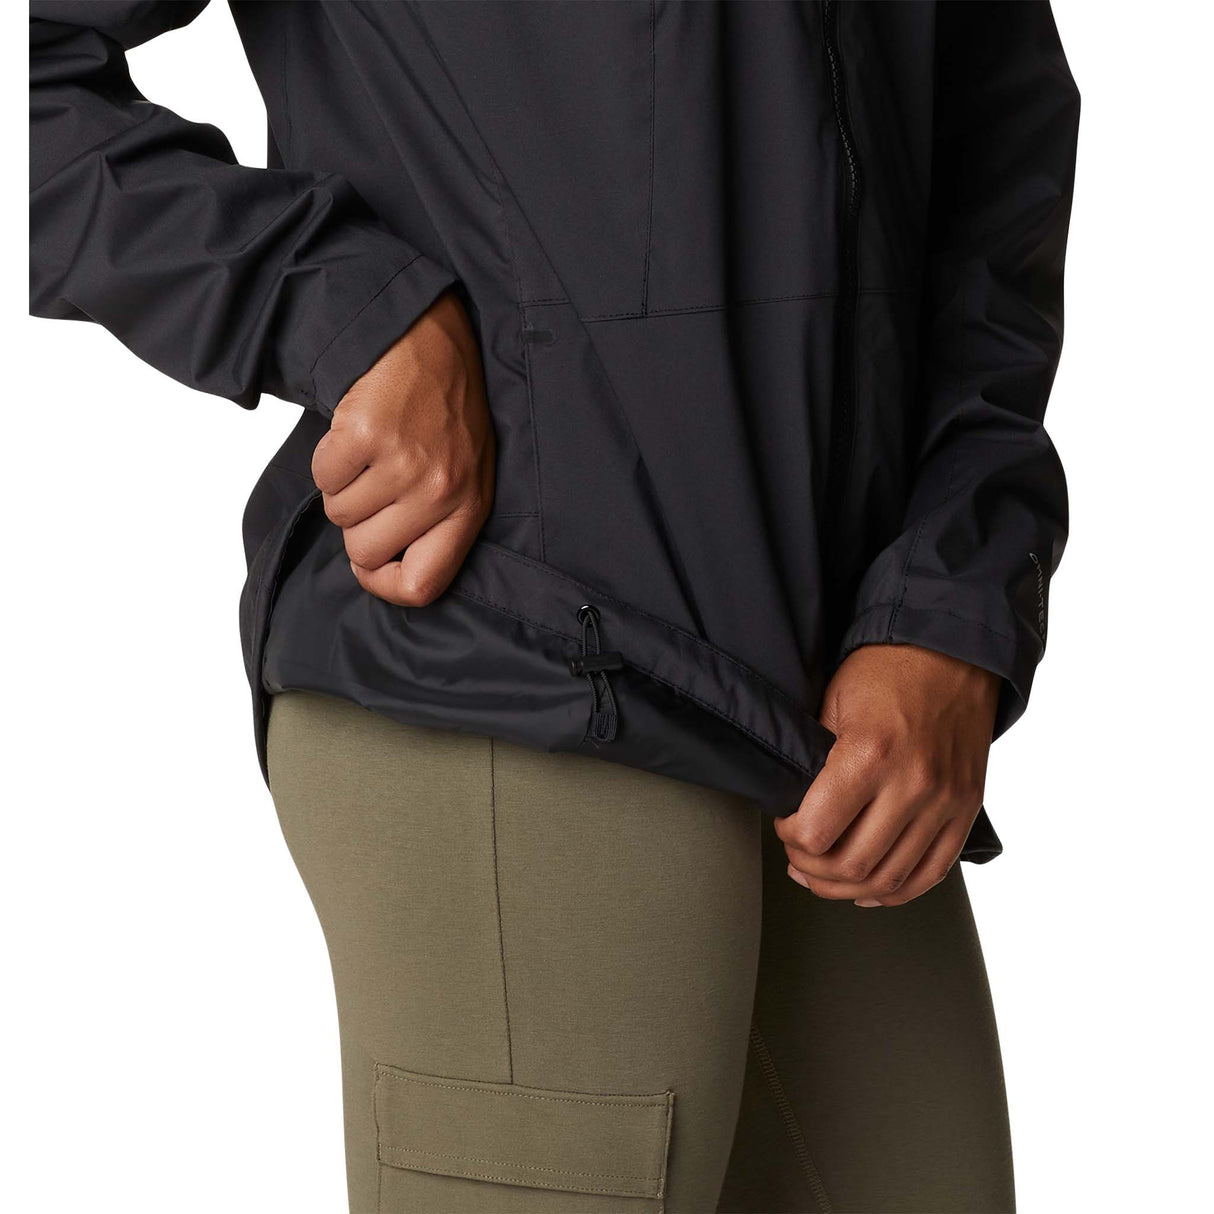 Columbia Sunrise Ridge manteau de pluie coquille noir pour femme taille